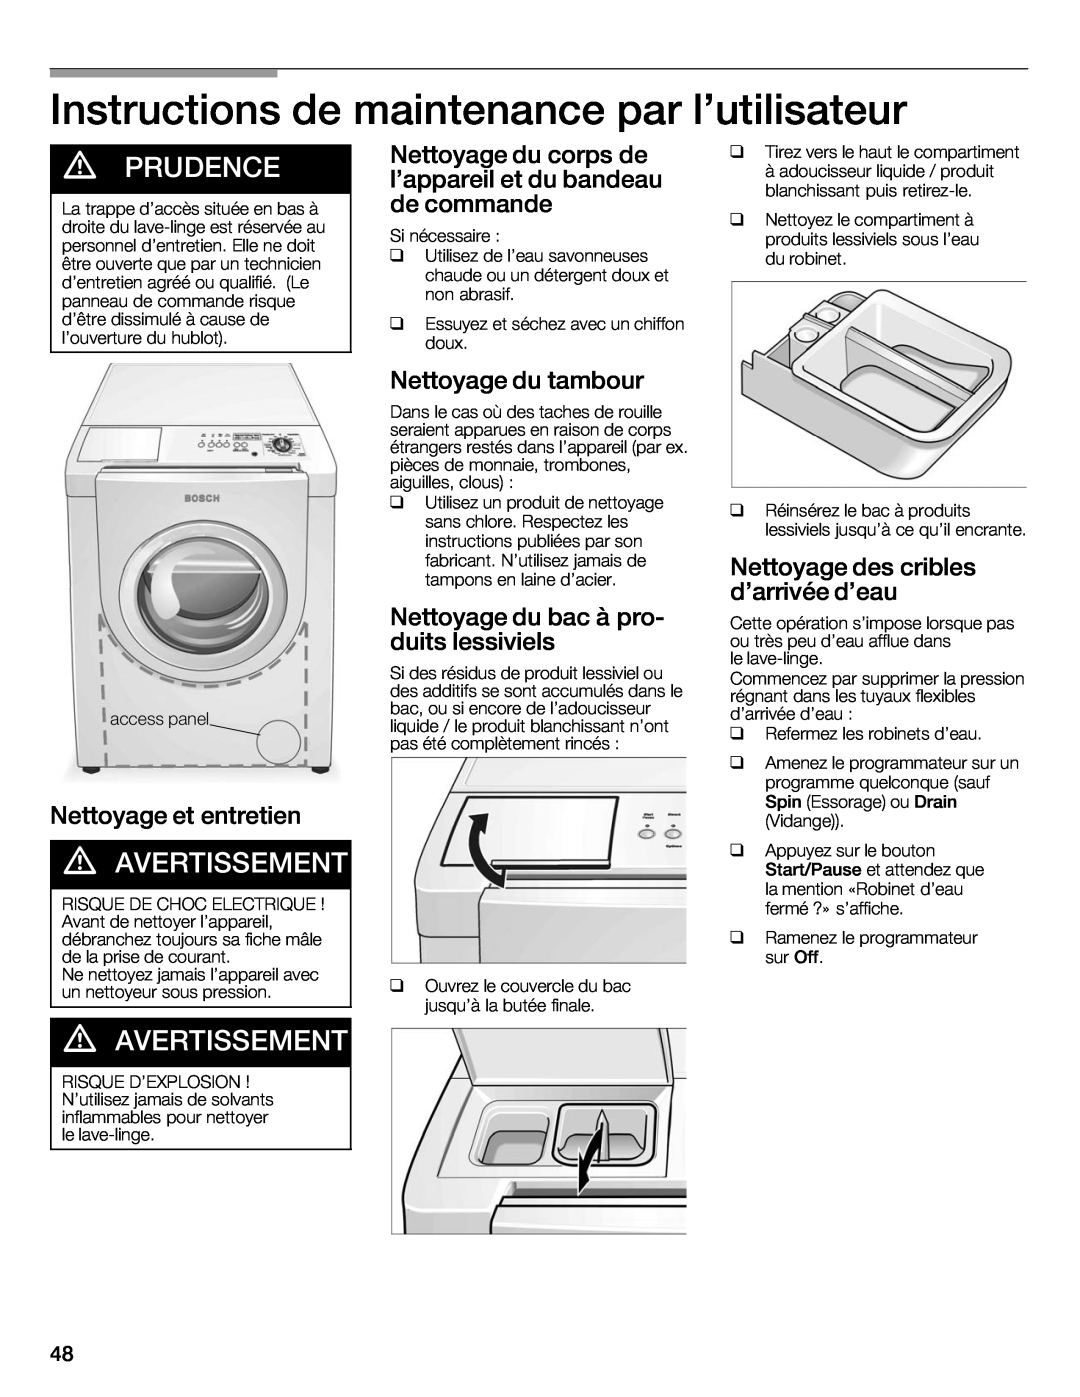 Bosch Appliances 500 Plus Series manual Instructions de, maintenance par lutilisateur, d PRUDENCE, d AVERTISSEMENT 